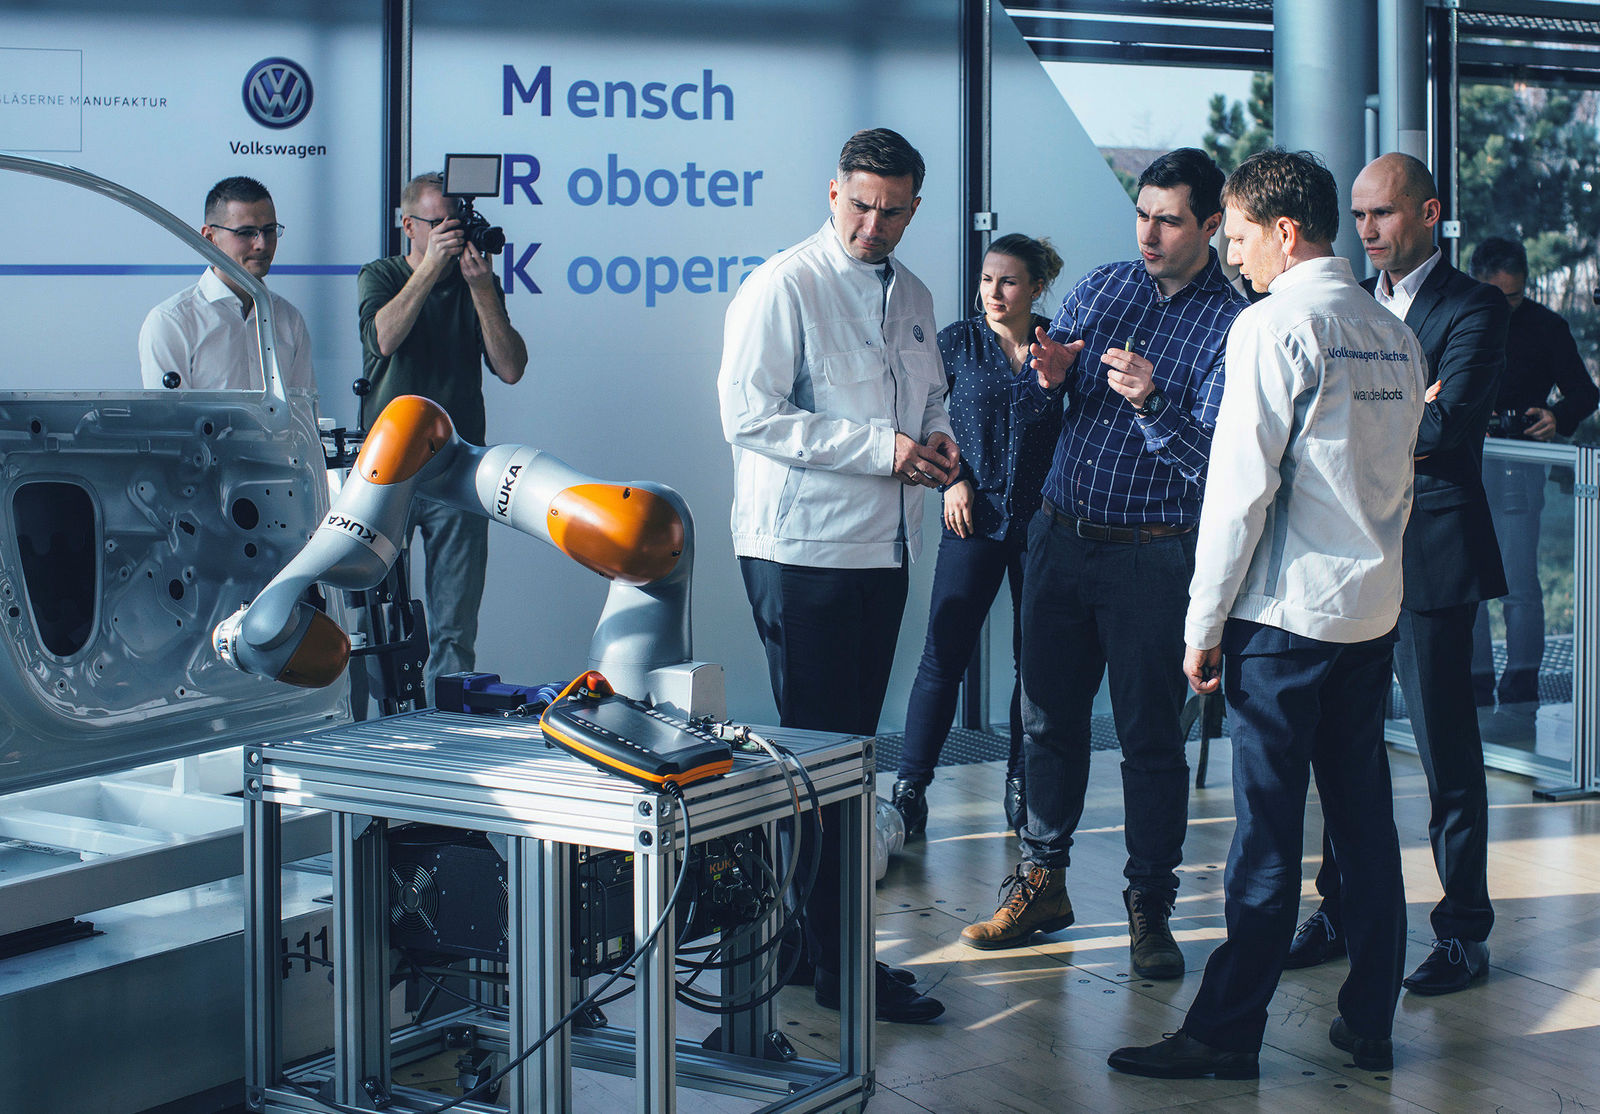 Innovative sensor jacket trains industrial robots – Transparent Factory establishes partnership with Dresden-based start-up Wandelbots